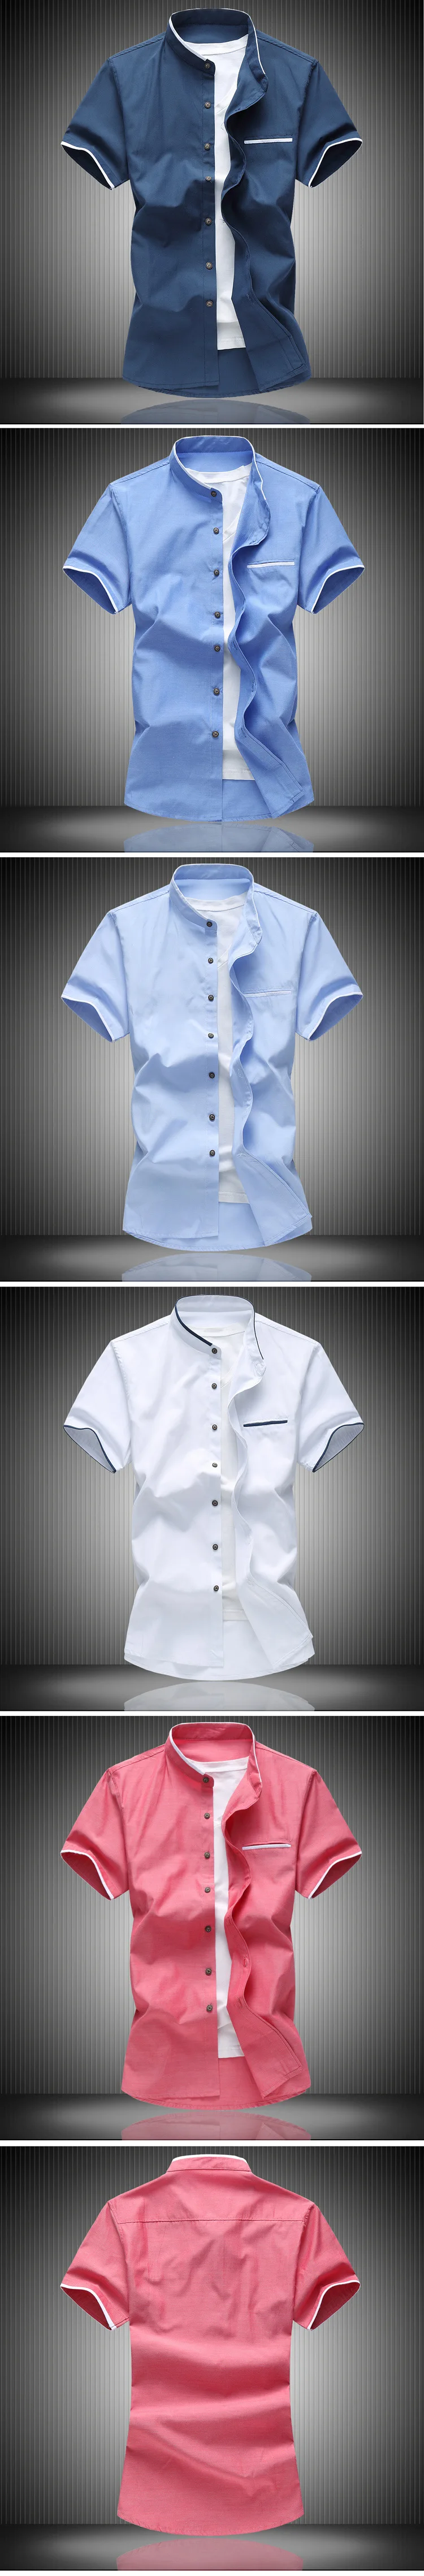 2019 летняя рубашка с короткими рукавами для мужчин бизнес отдыха s рубашки для мальчиков большой размеры 7XL Тонкий High Street рубашк